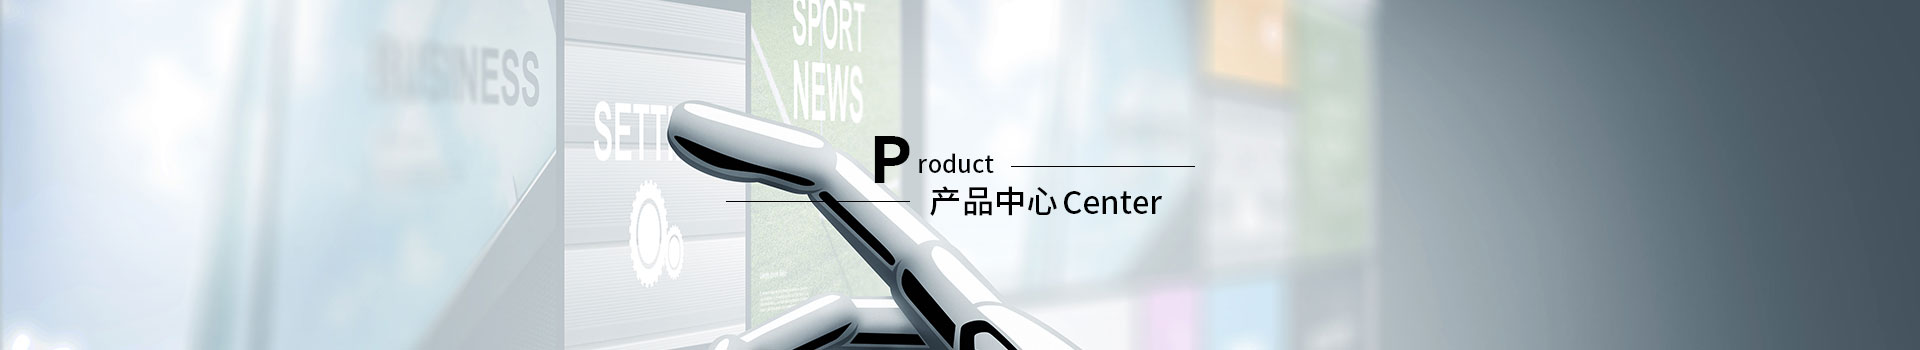 压力变送器PMC133-深圳市佰盛仪表科技有限公司